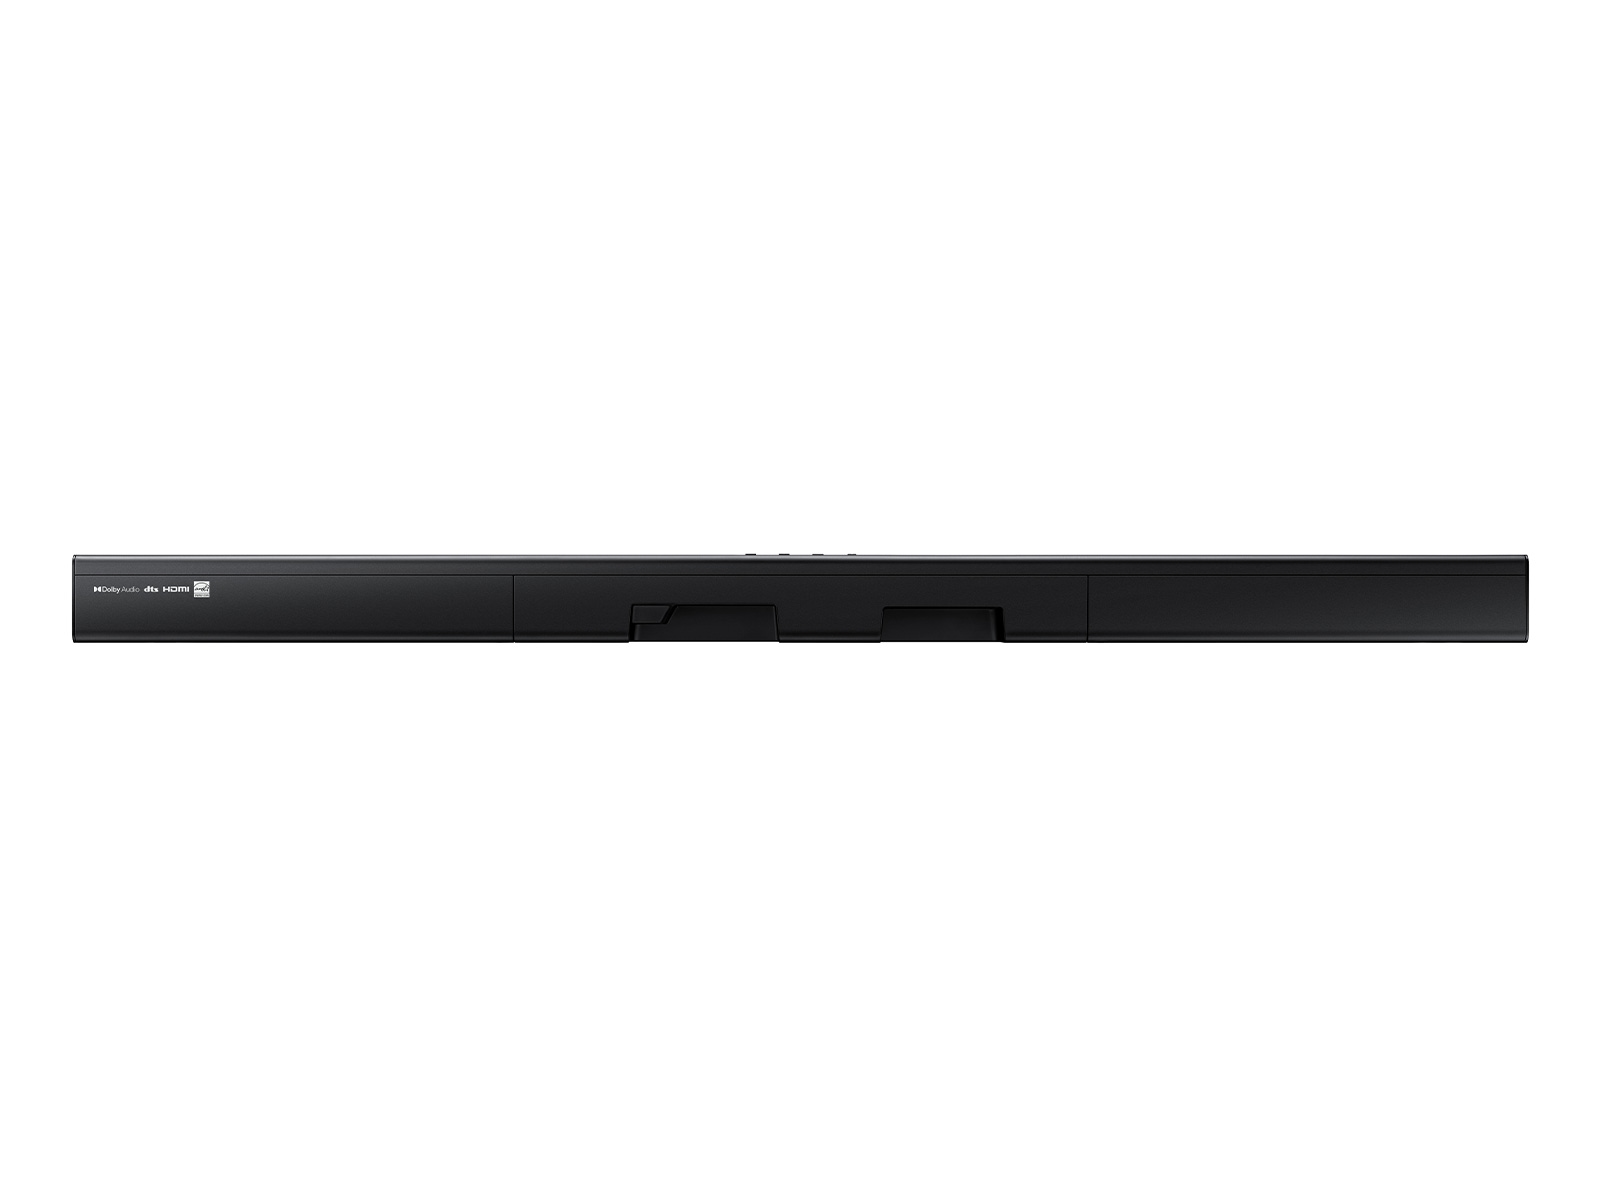 HW-A550 2.1 Soundbar w/ DTS Virtual:X & Dolby 5.1 (2021) | Samsung US